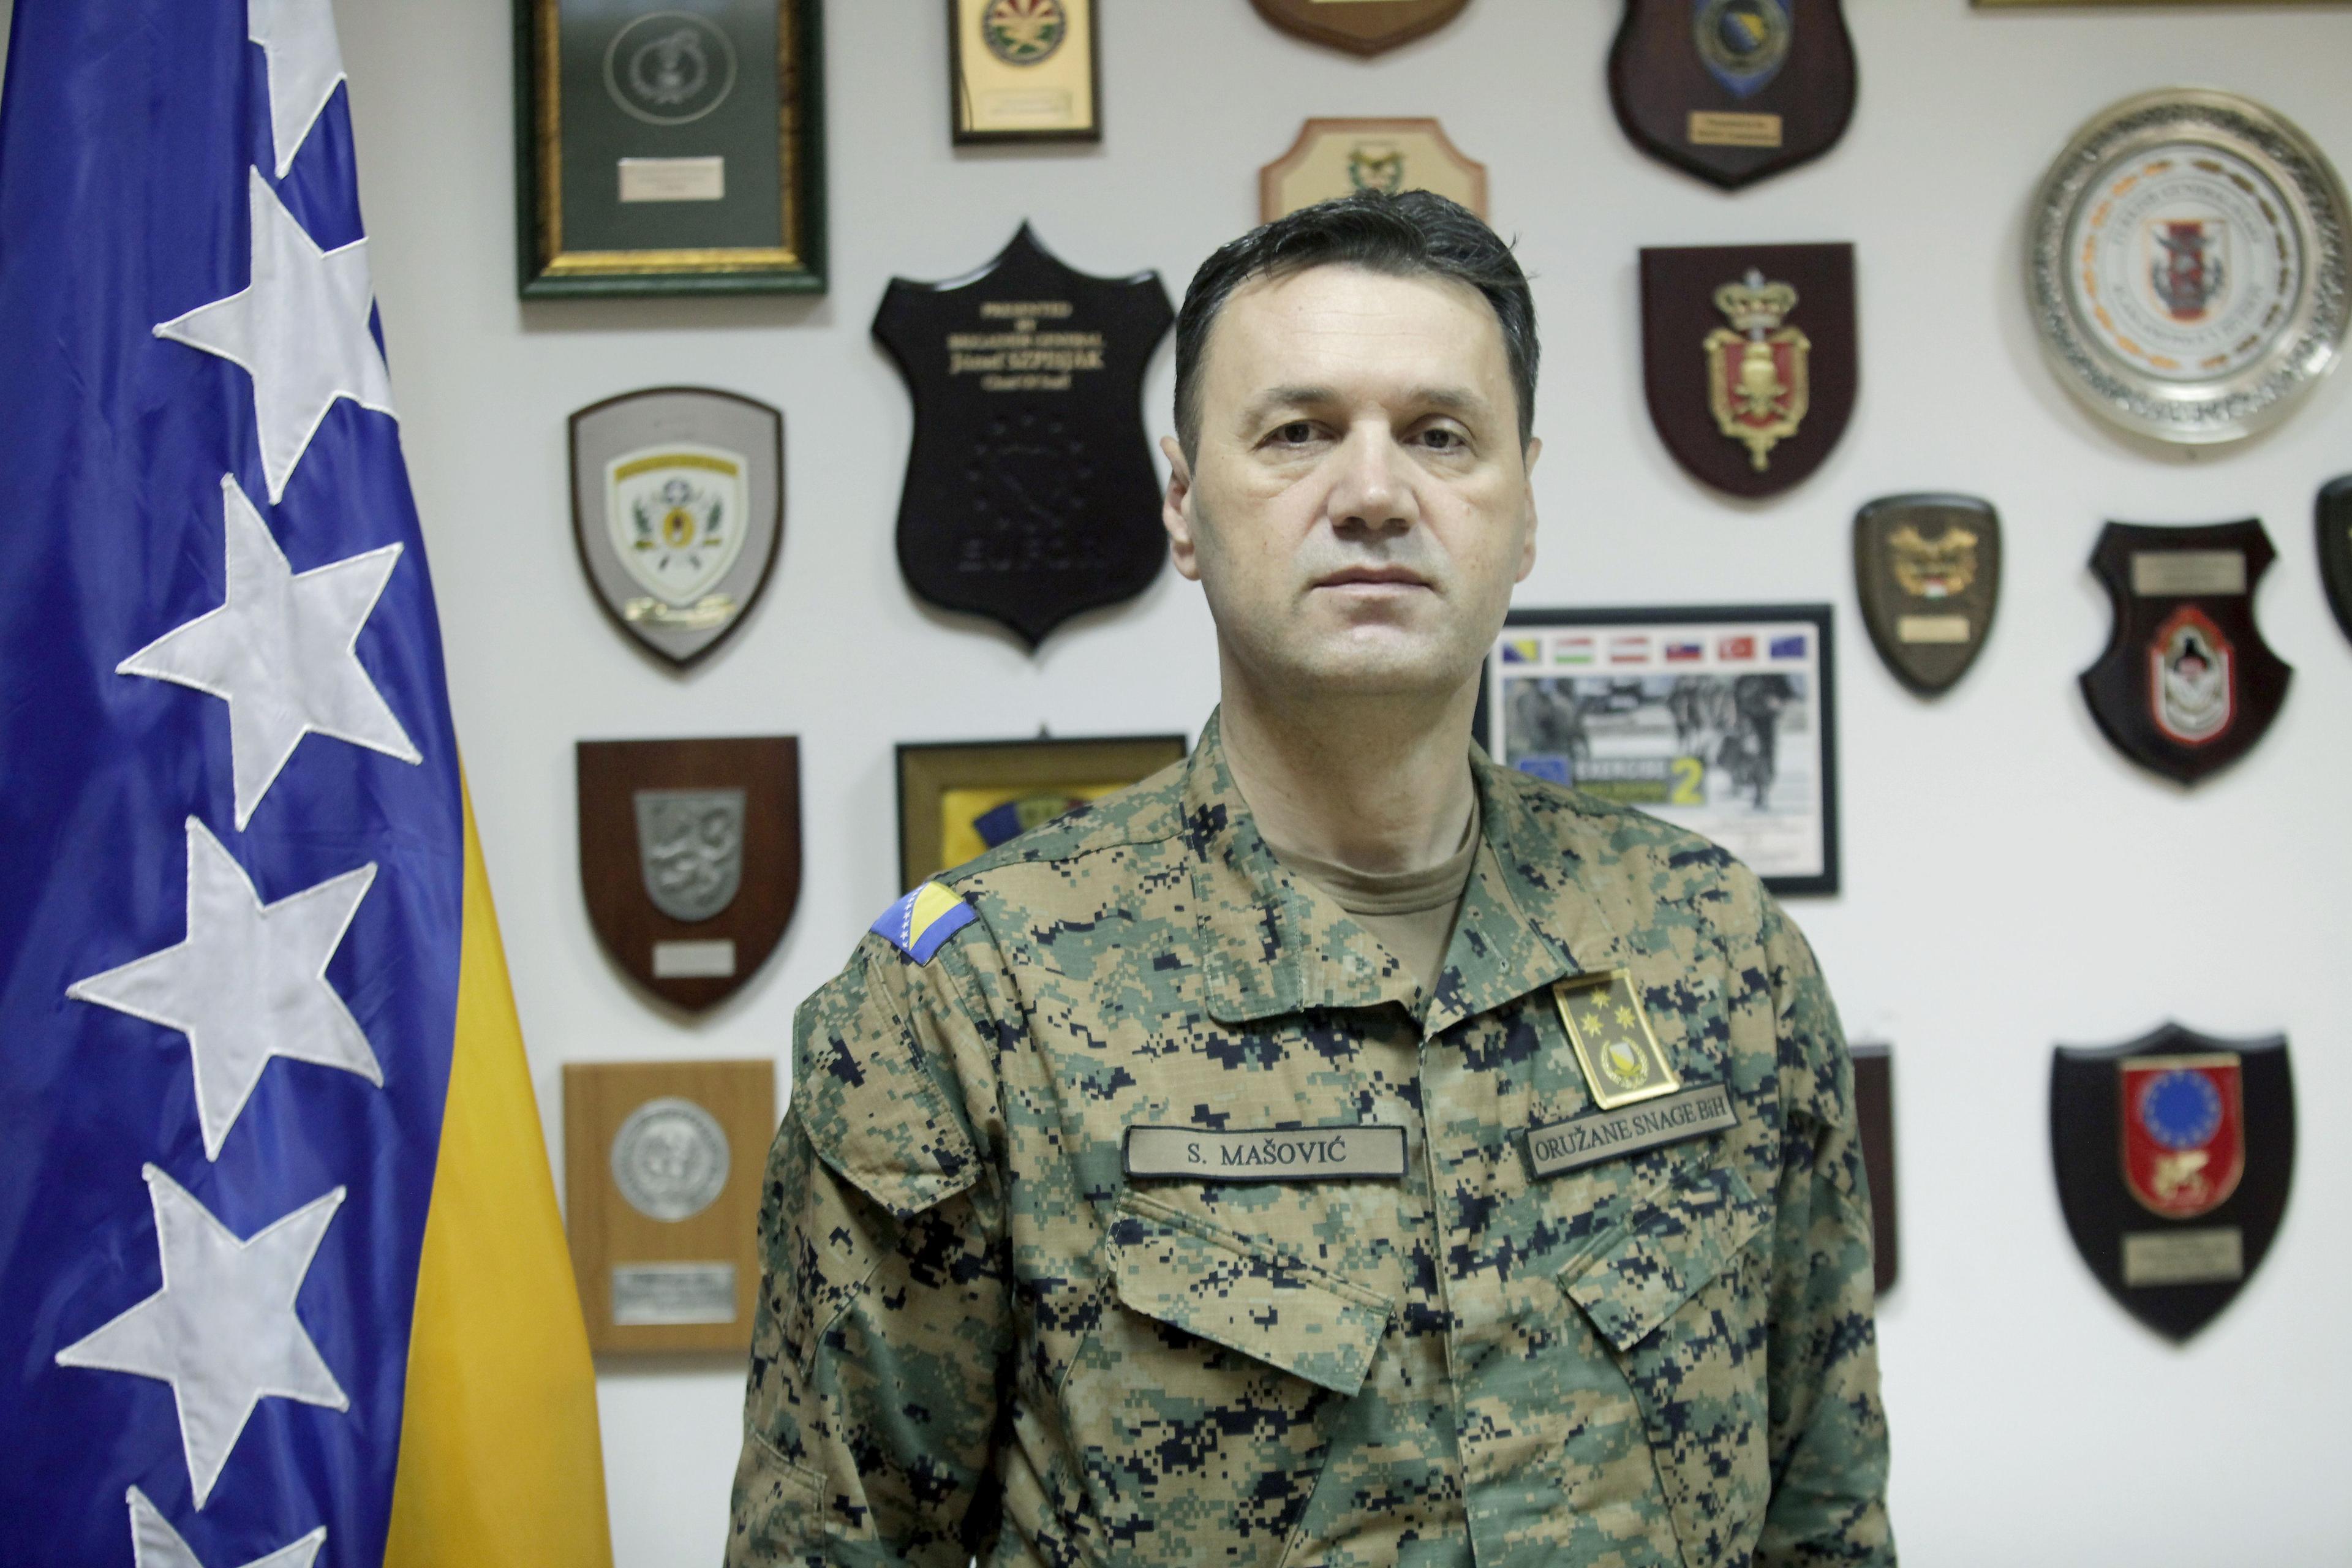 Mašović: Važno je razumjeti da NATO savezu ne pristupaju samo Oružane snage nego i BiH kao država - Avaz